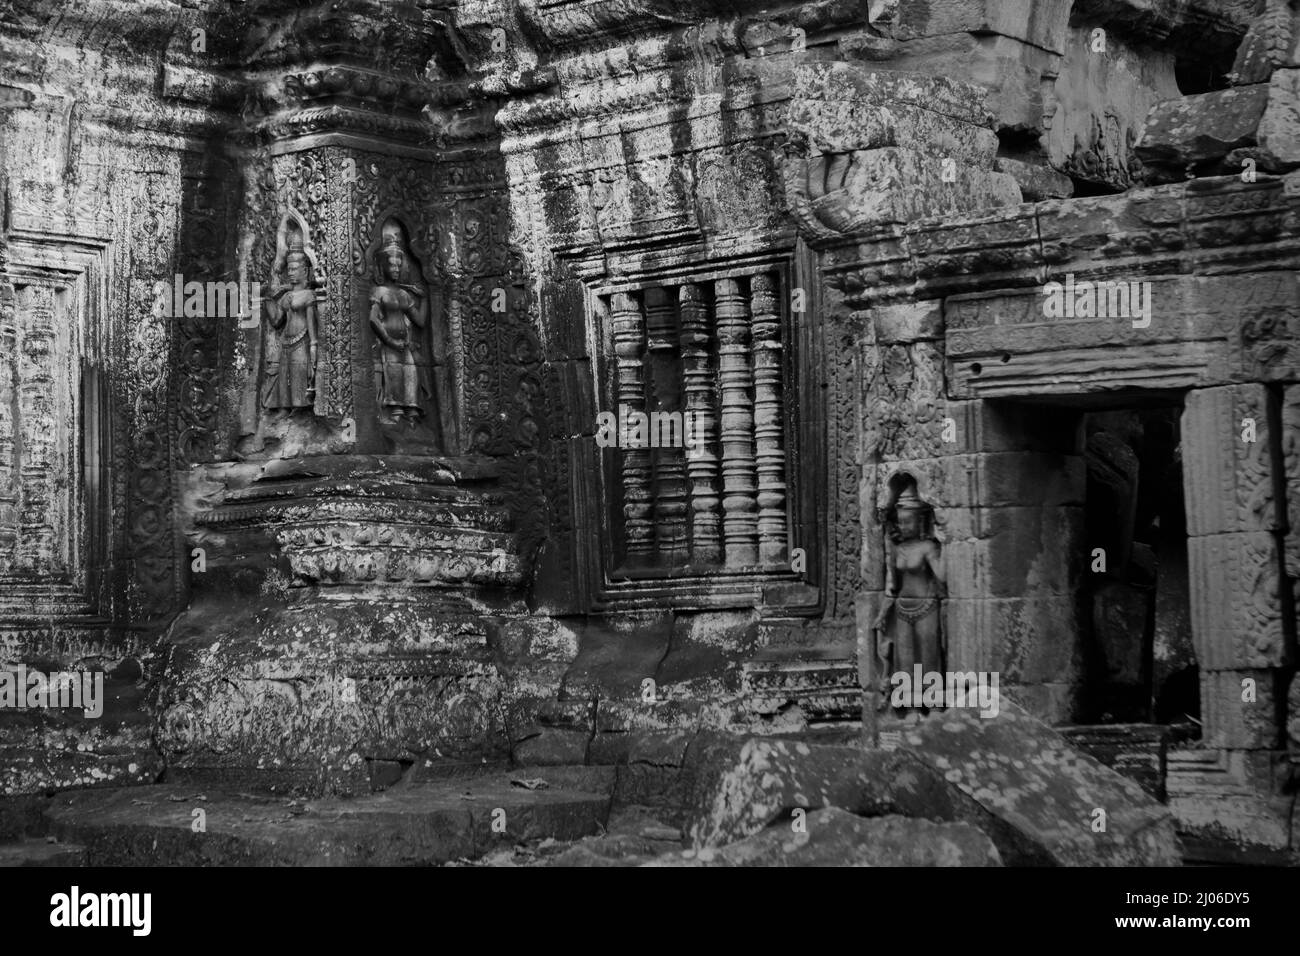 Bas-Relief einer apsara-Figur am Eingang, Ta Prohm, Siem Reap, Kambodscha (schwarz-weiße Version). Stockfoto